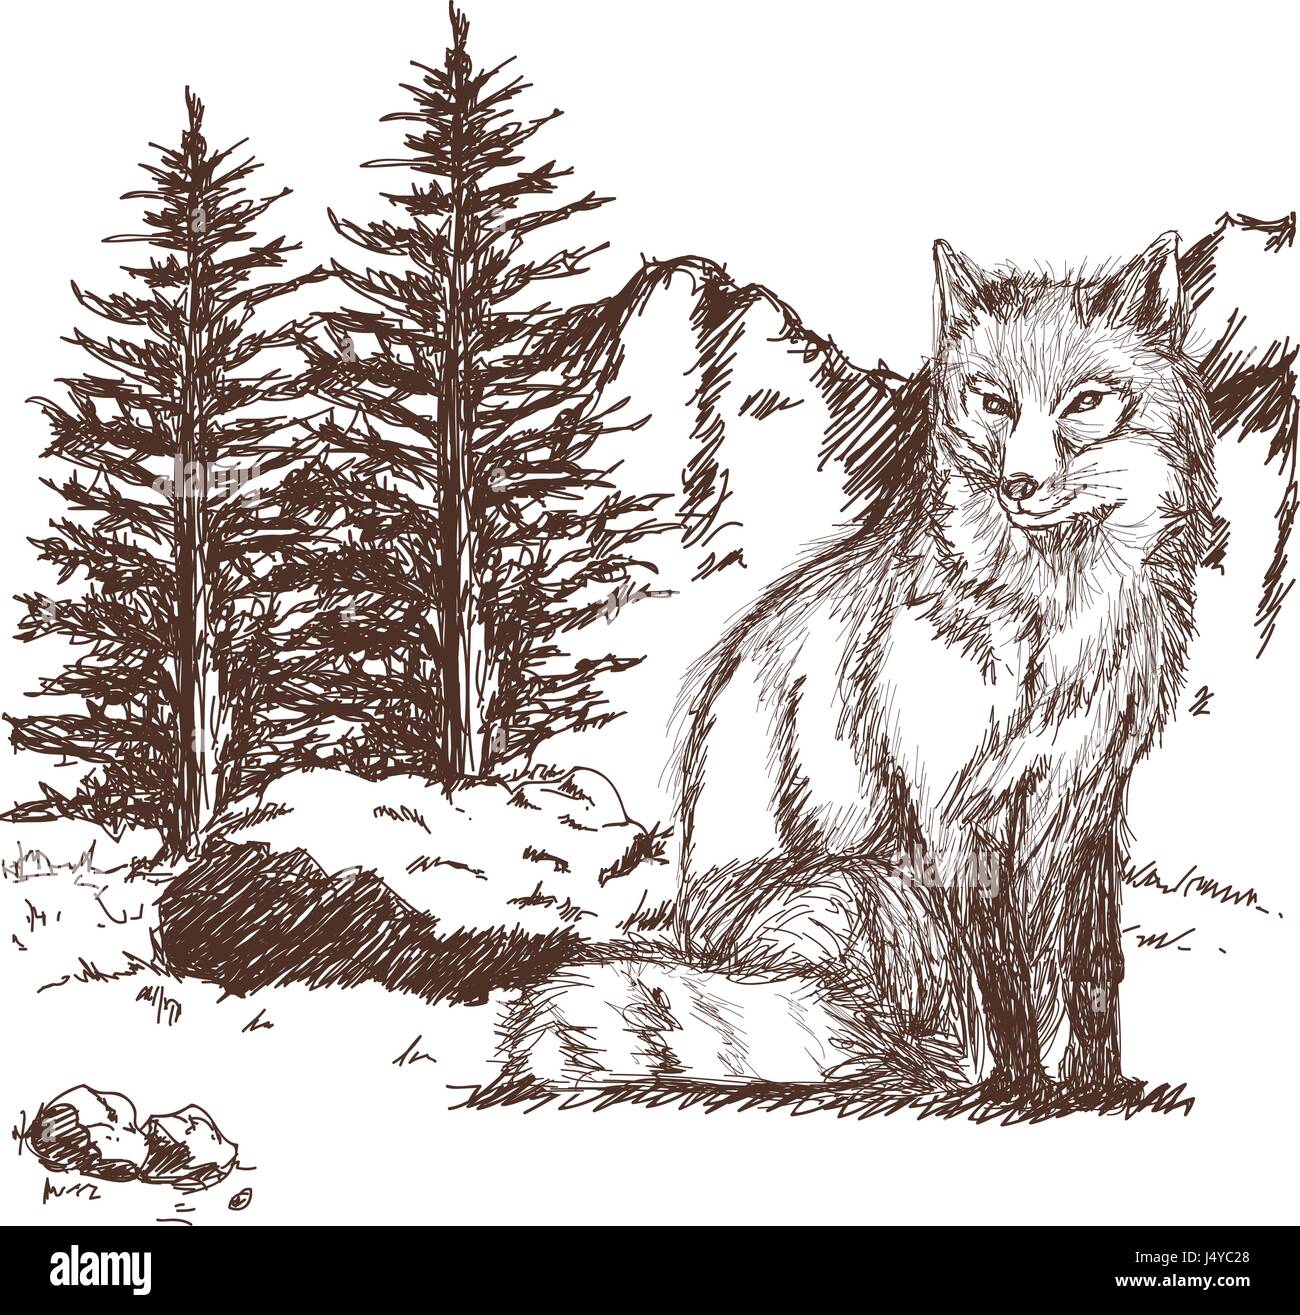 Wolf Tierwelt Tier Bild Ist Von Hand Gezeichnet Bleistiftskizze Von Wolf Landschaft Stock Vektorgrafik Alamy